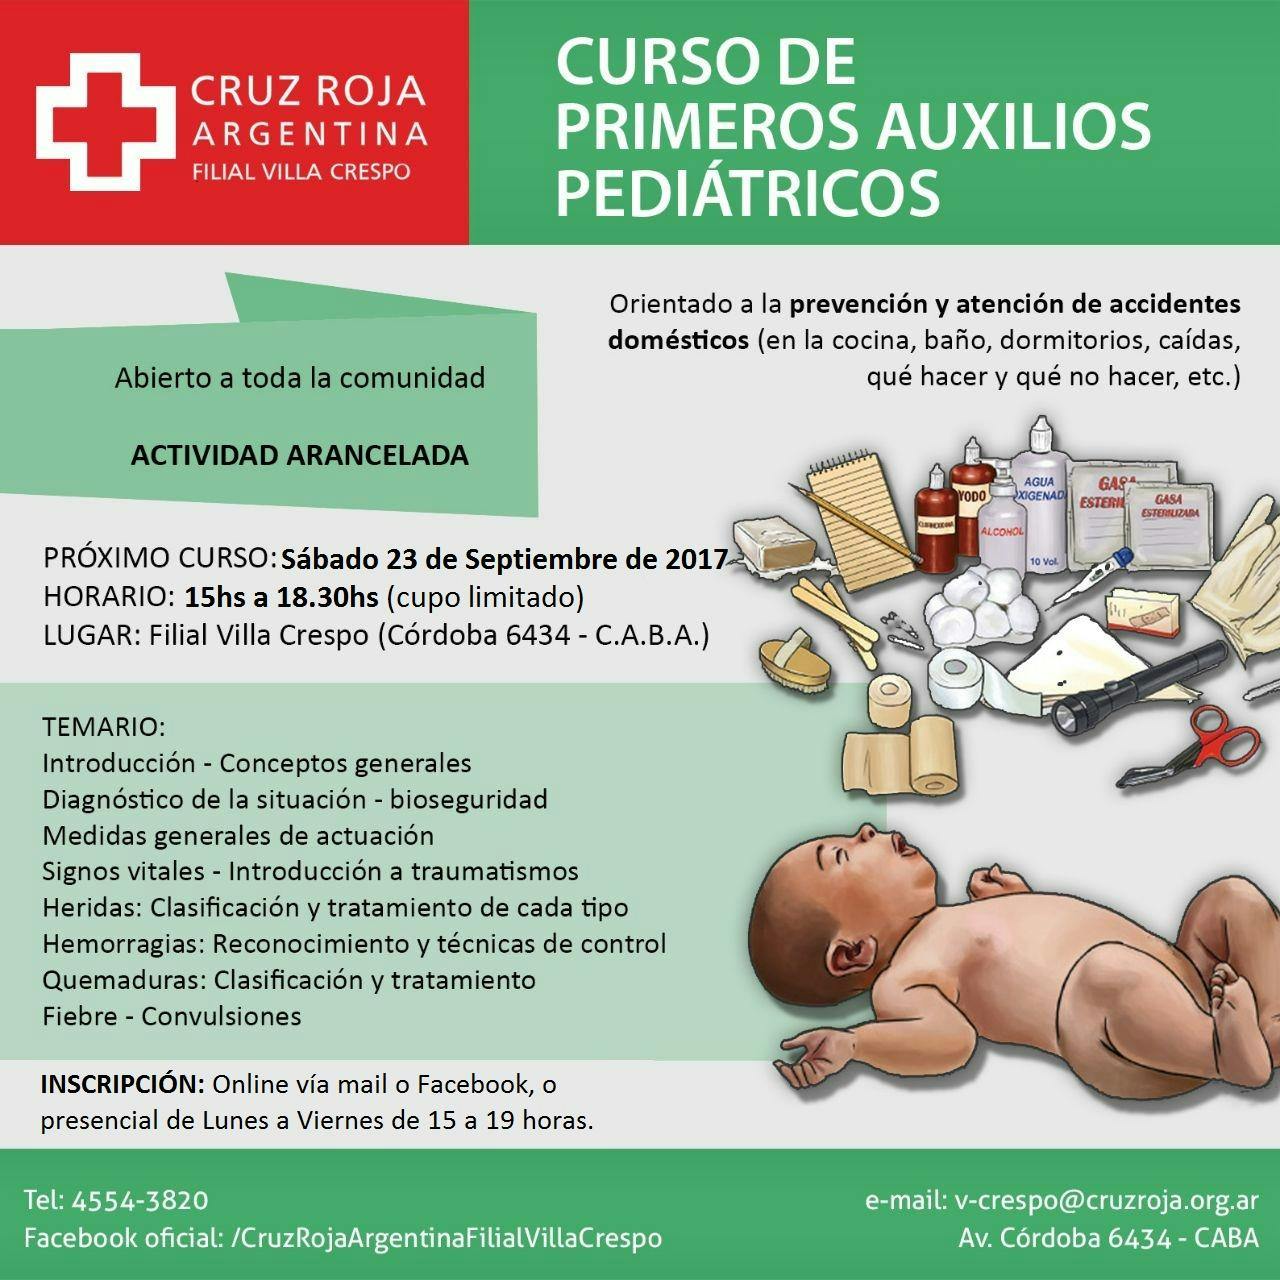 Curso de RCP en Cruz Roja (23-05-19) - Duración 4 hs.